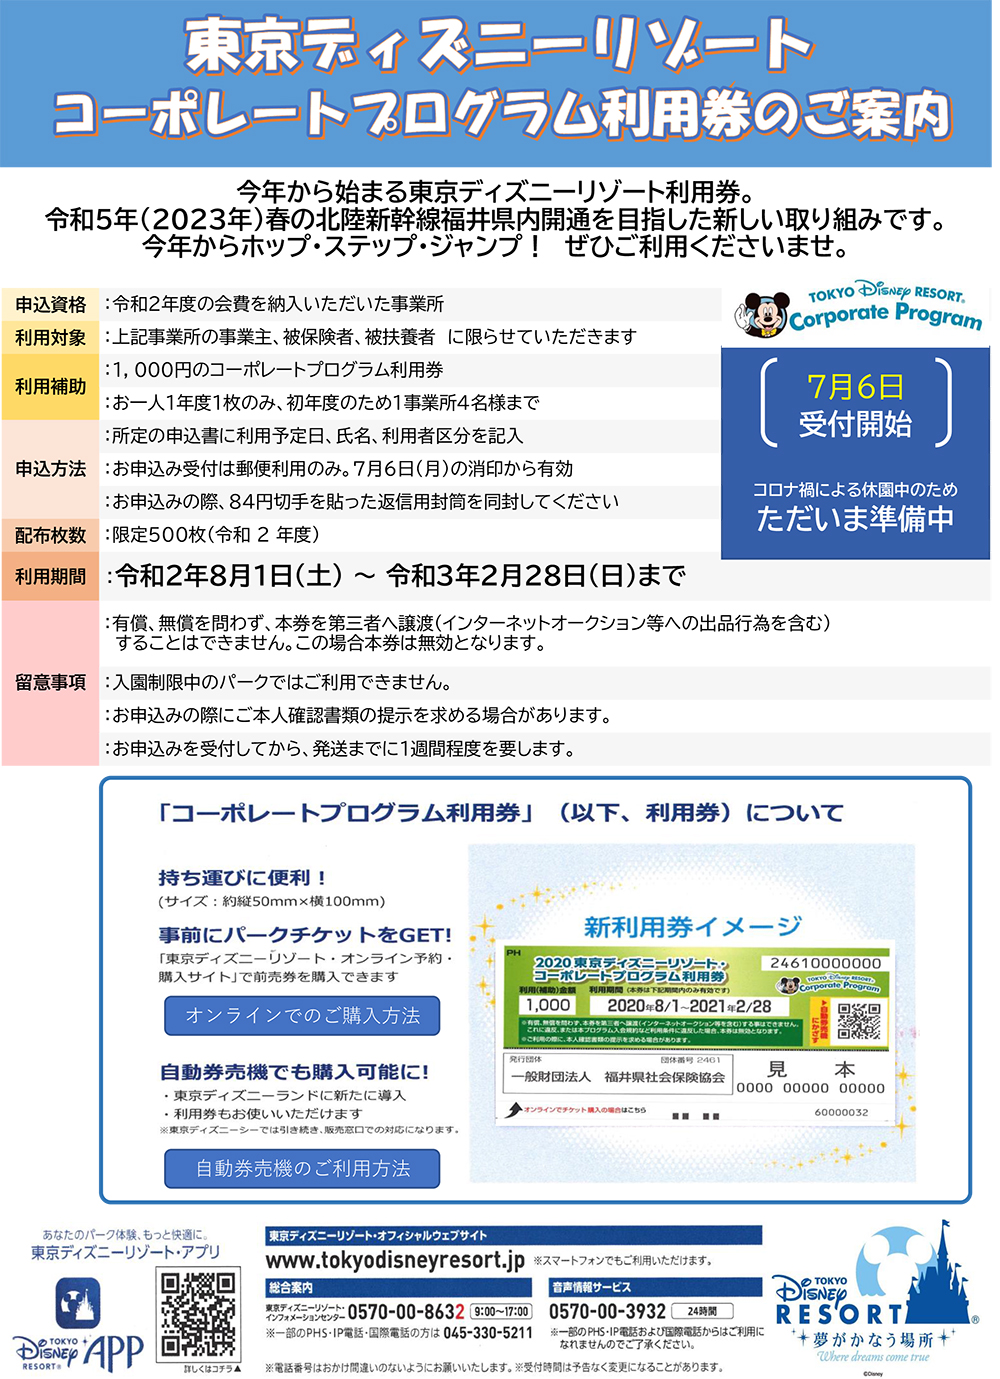 東京ディズニーリゾートコーポレートプログラム利用券について 福井県社会保険協会